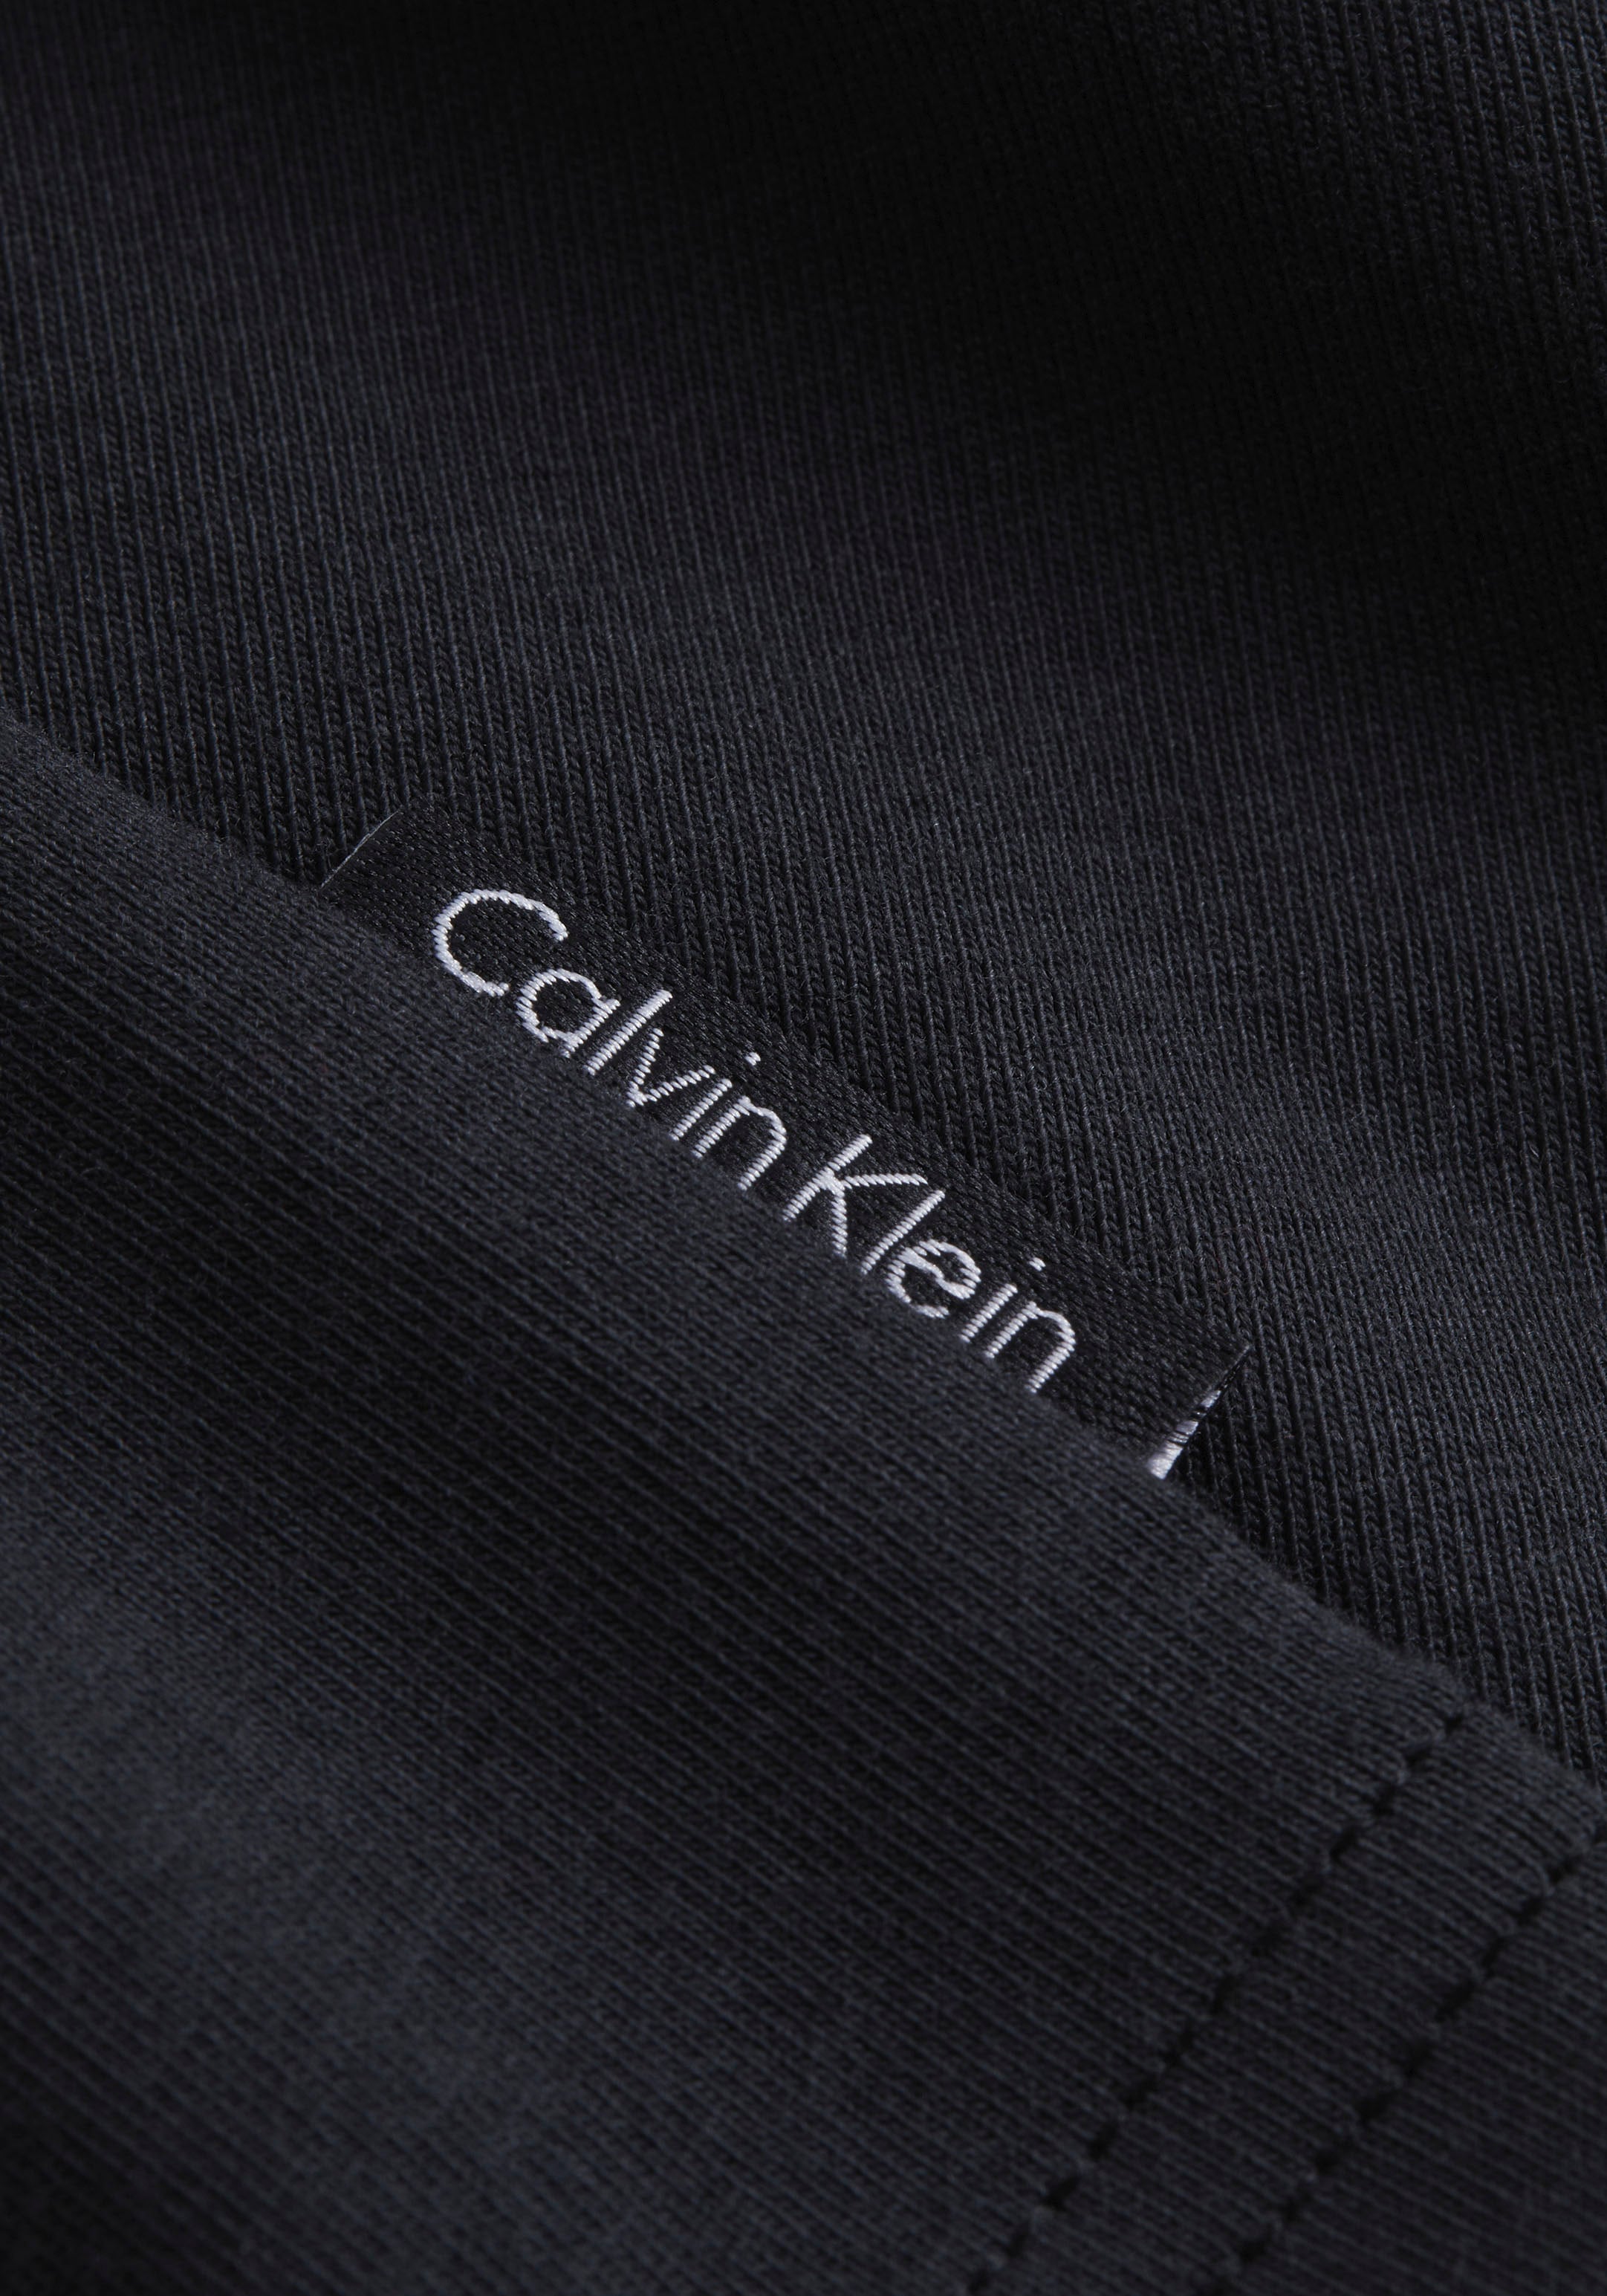 Calvin Klein Underwear Shorty »S/S BOXER SET«, mit kurzen Ärmeln